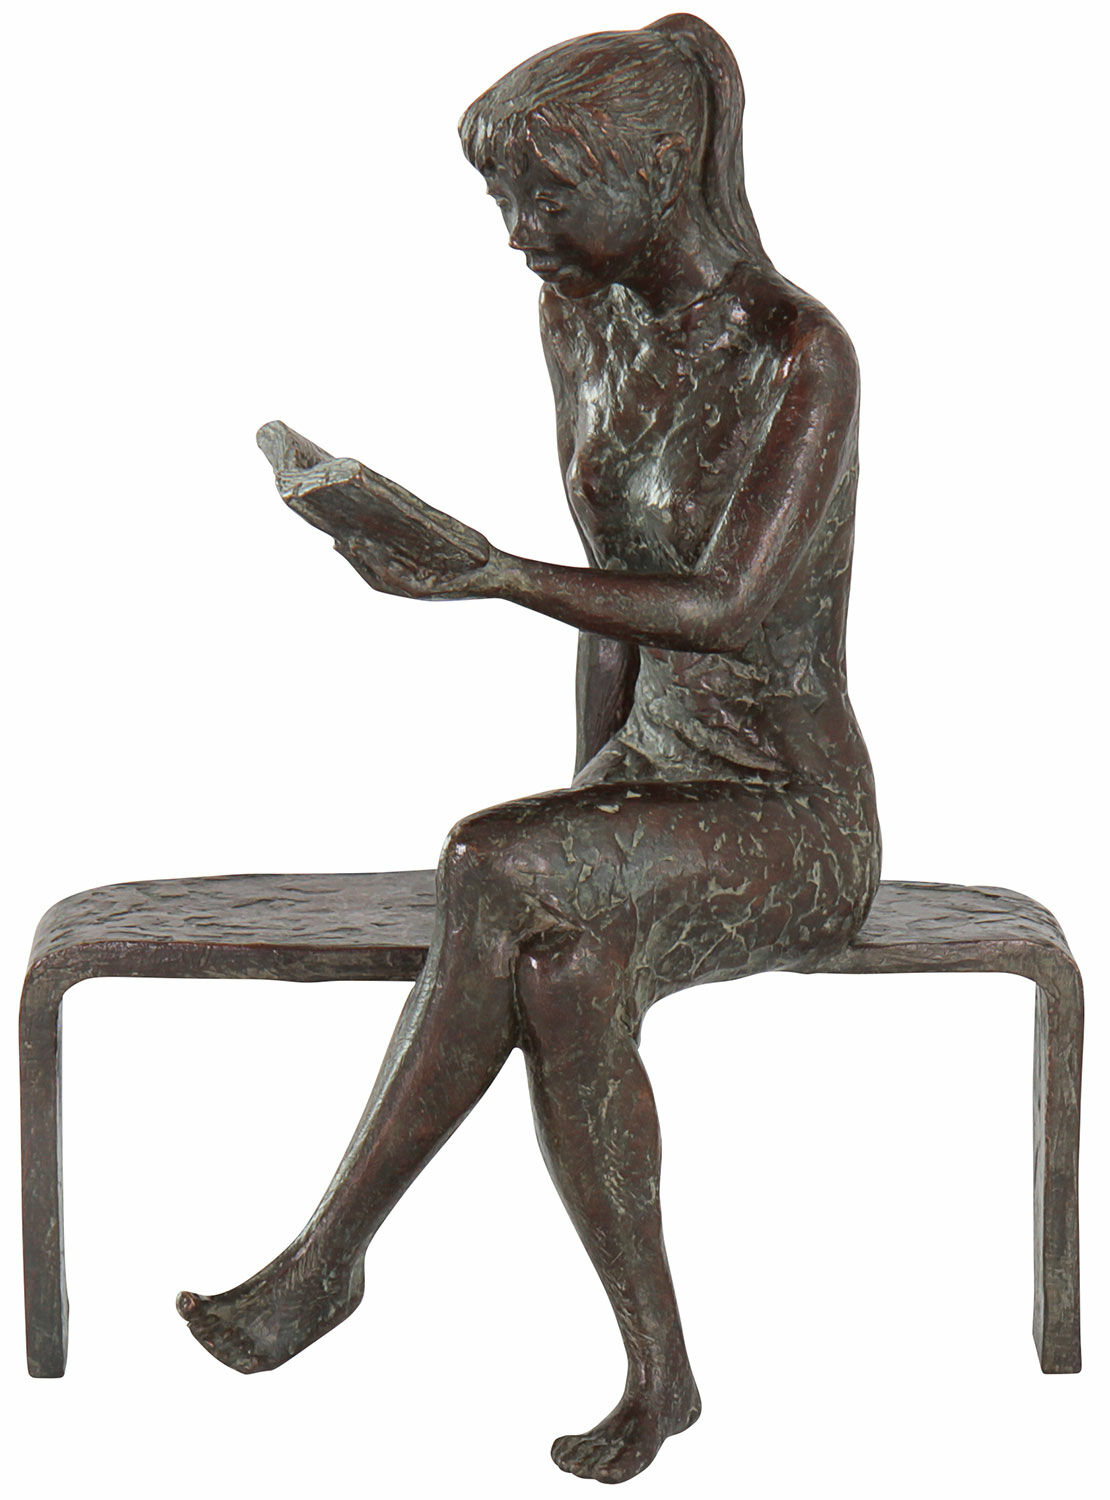 Sculpture "Reading Girl", bronze by Jürgen Ebert